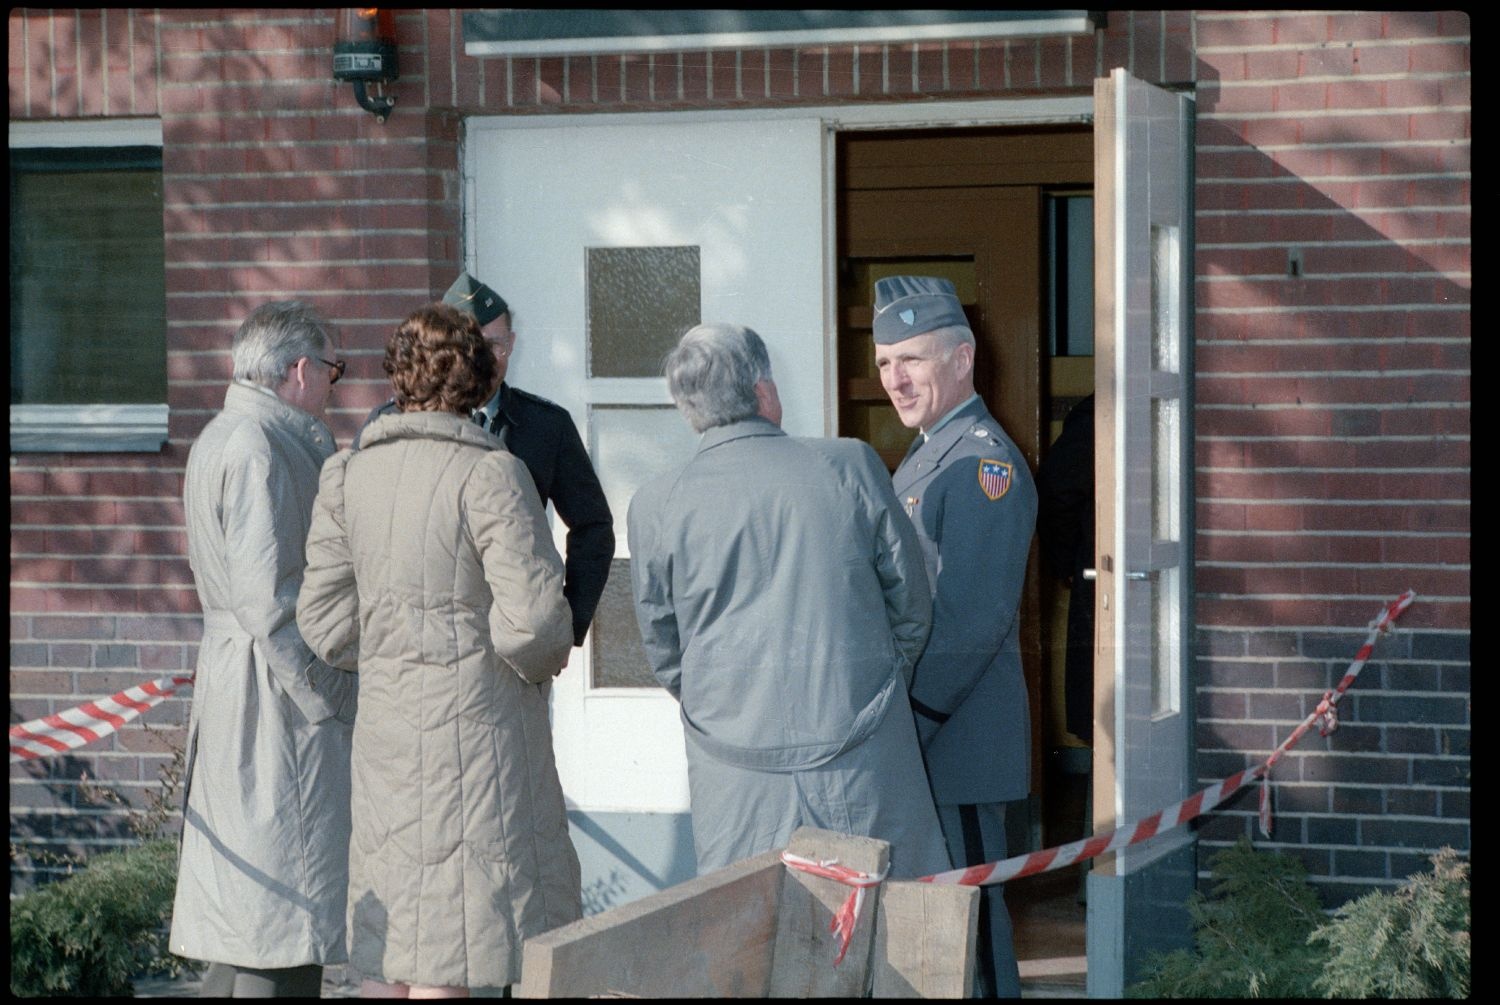 Fotografie: Besuch von Eberhard Diepgen, Regierender Bürgermeister von Berlin, beim 6941st Guard Battalion in Berlin-Lichterfelde (AlliiertenMuseum/U.S. Army Photograph Public Domain Mark)